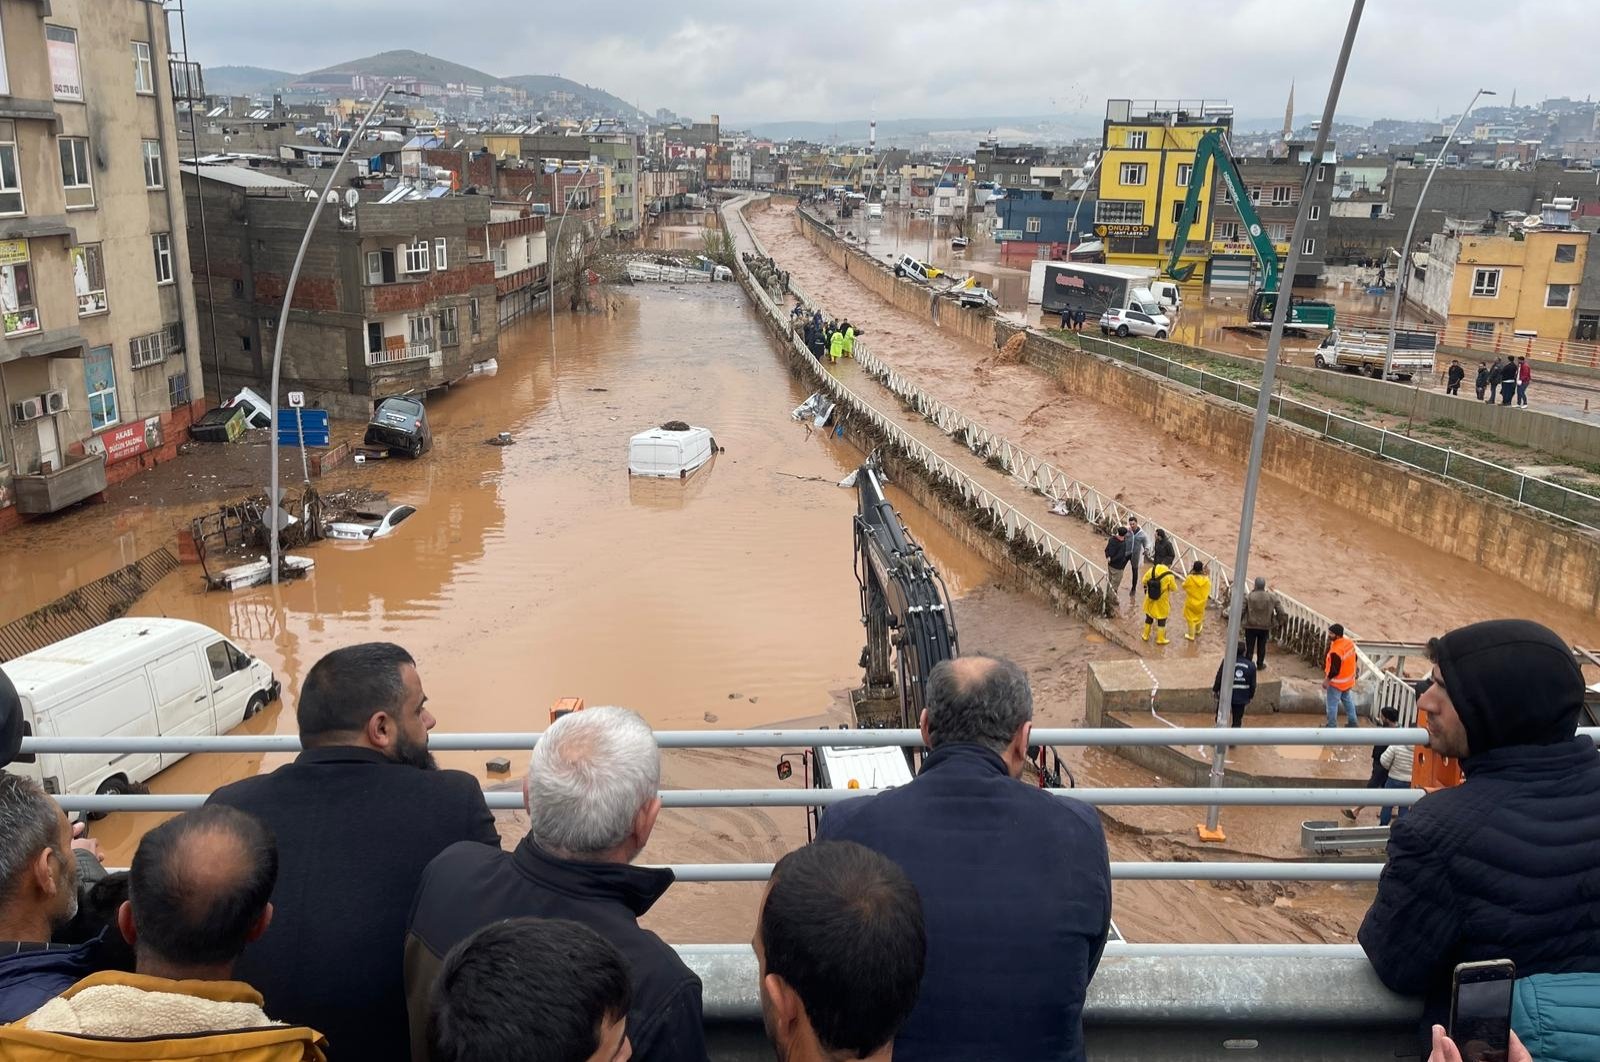 Korban tewas akibat banjir di zona gempa Türkiye naik menjadi 14